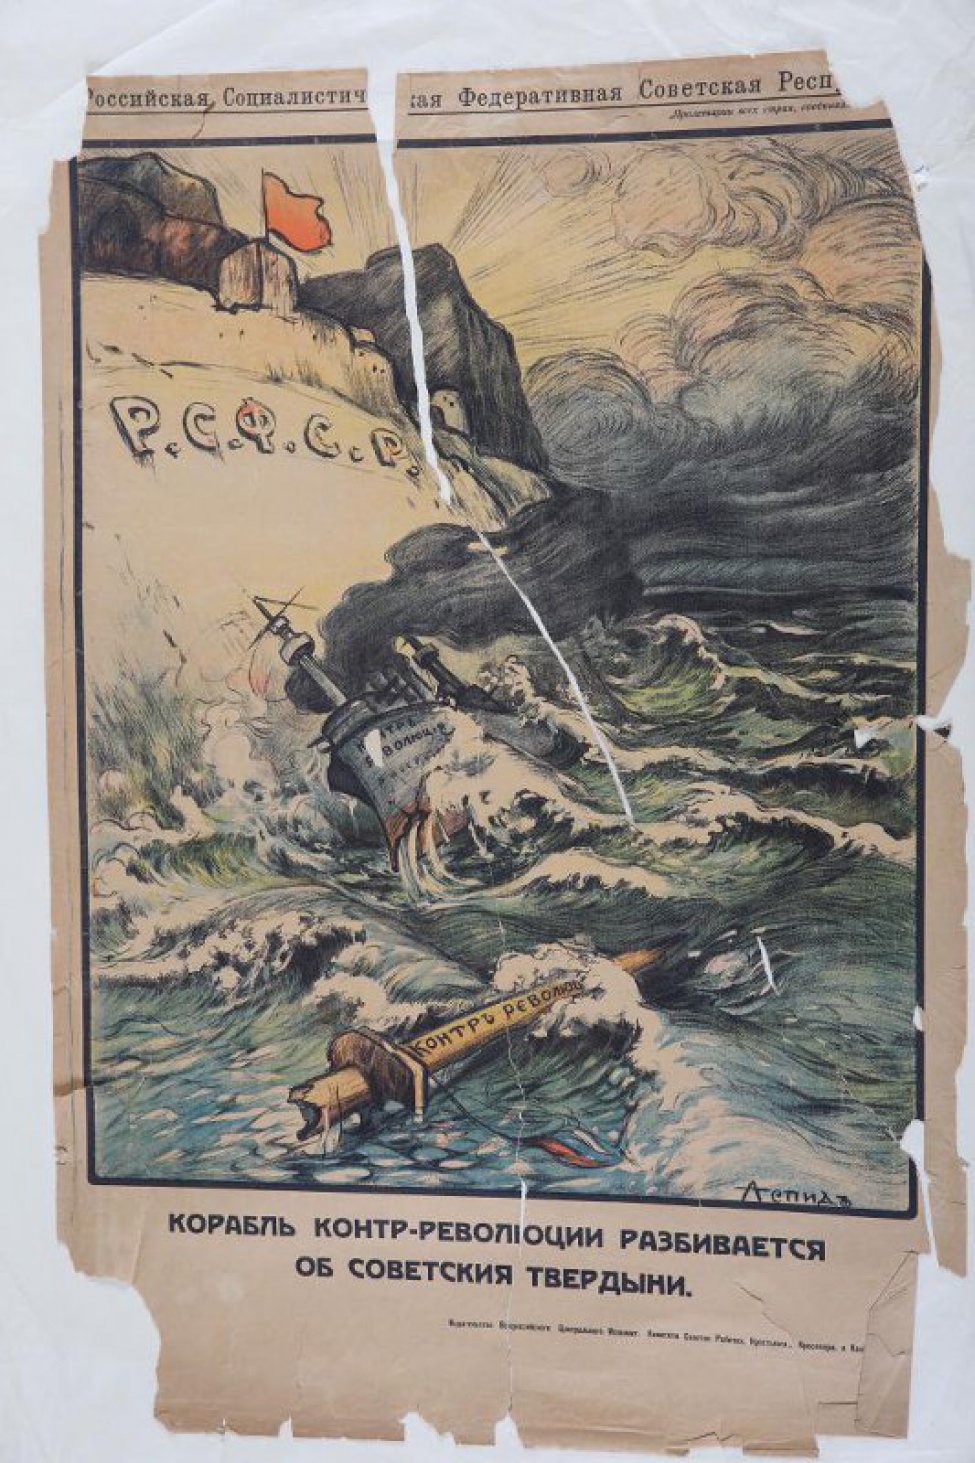 Изображена скала с надписью "РСФСР" и разбившийся корабль-контрреволюции. Впереди плывущая по морю часть мачты с корабля.